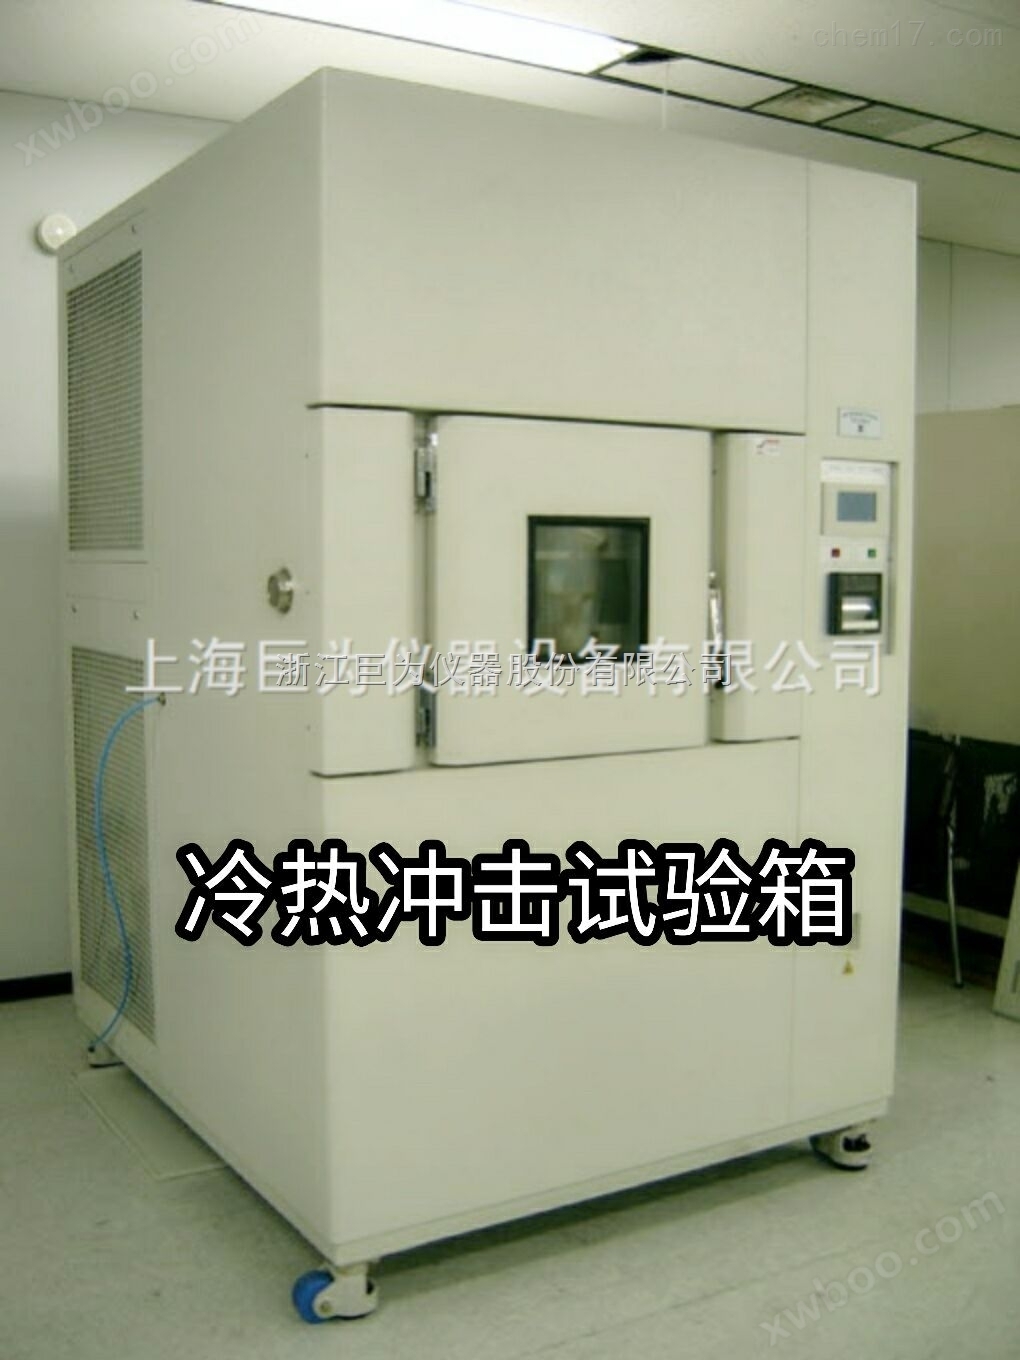 冷热冲击试验箱-温度冲击试验箱-高低温冲击试验箱